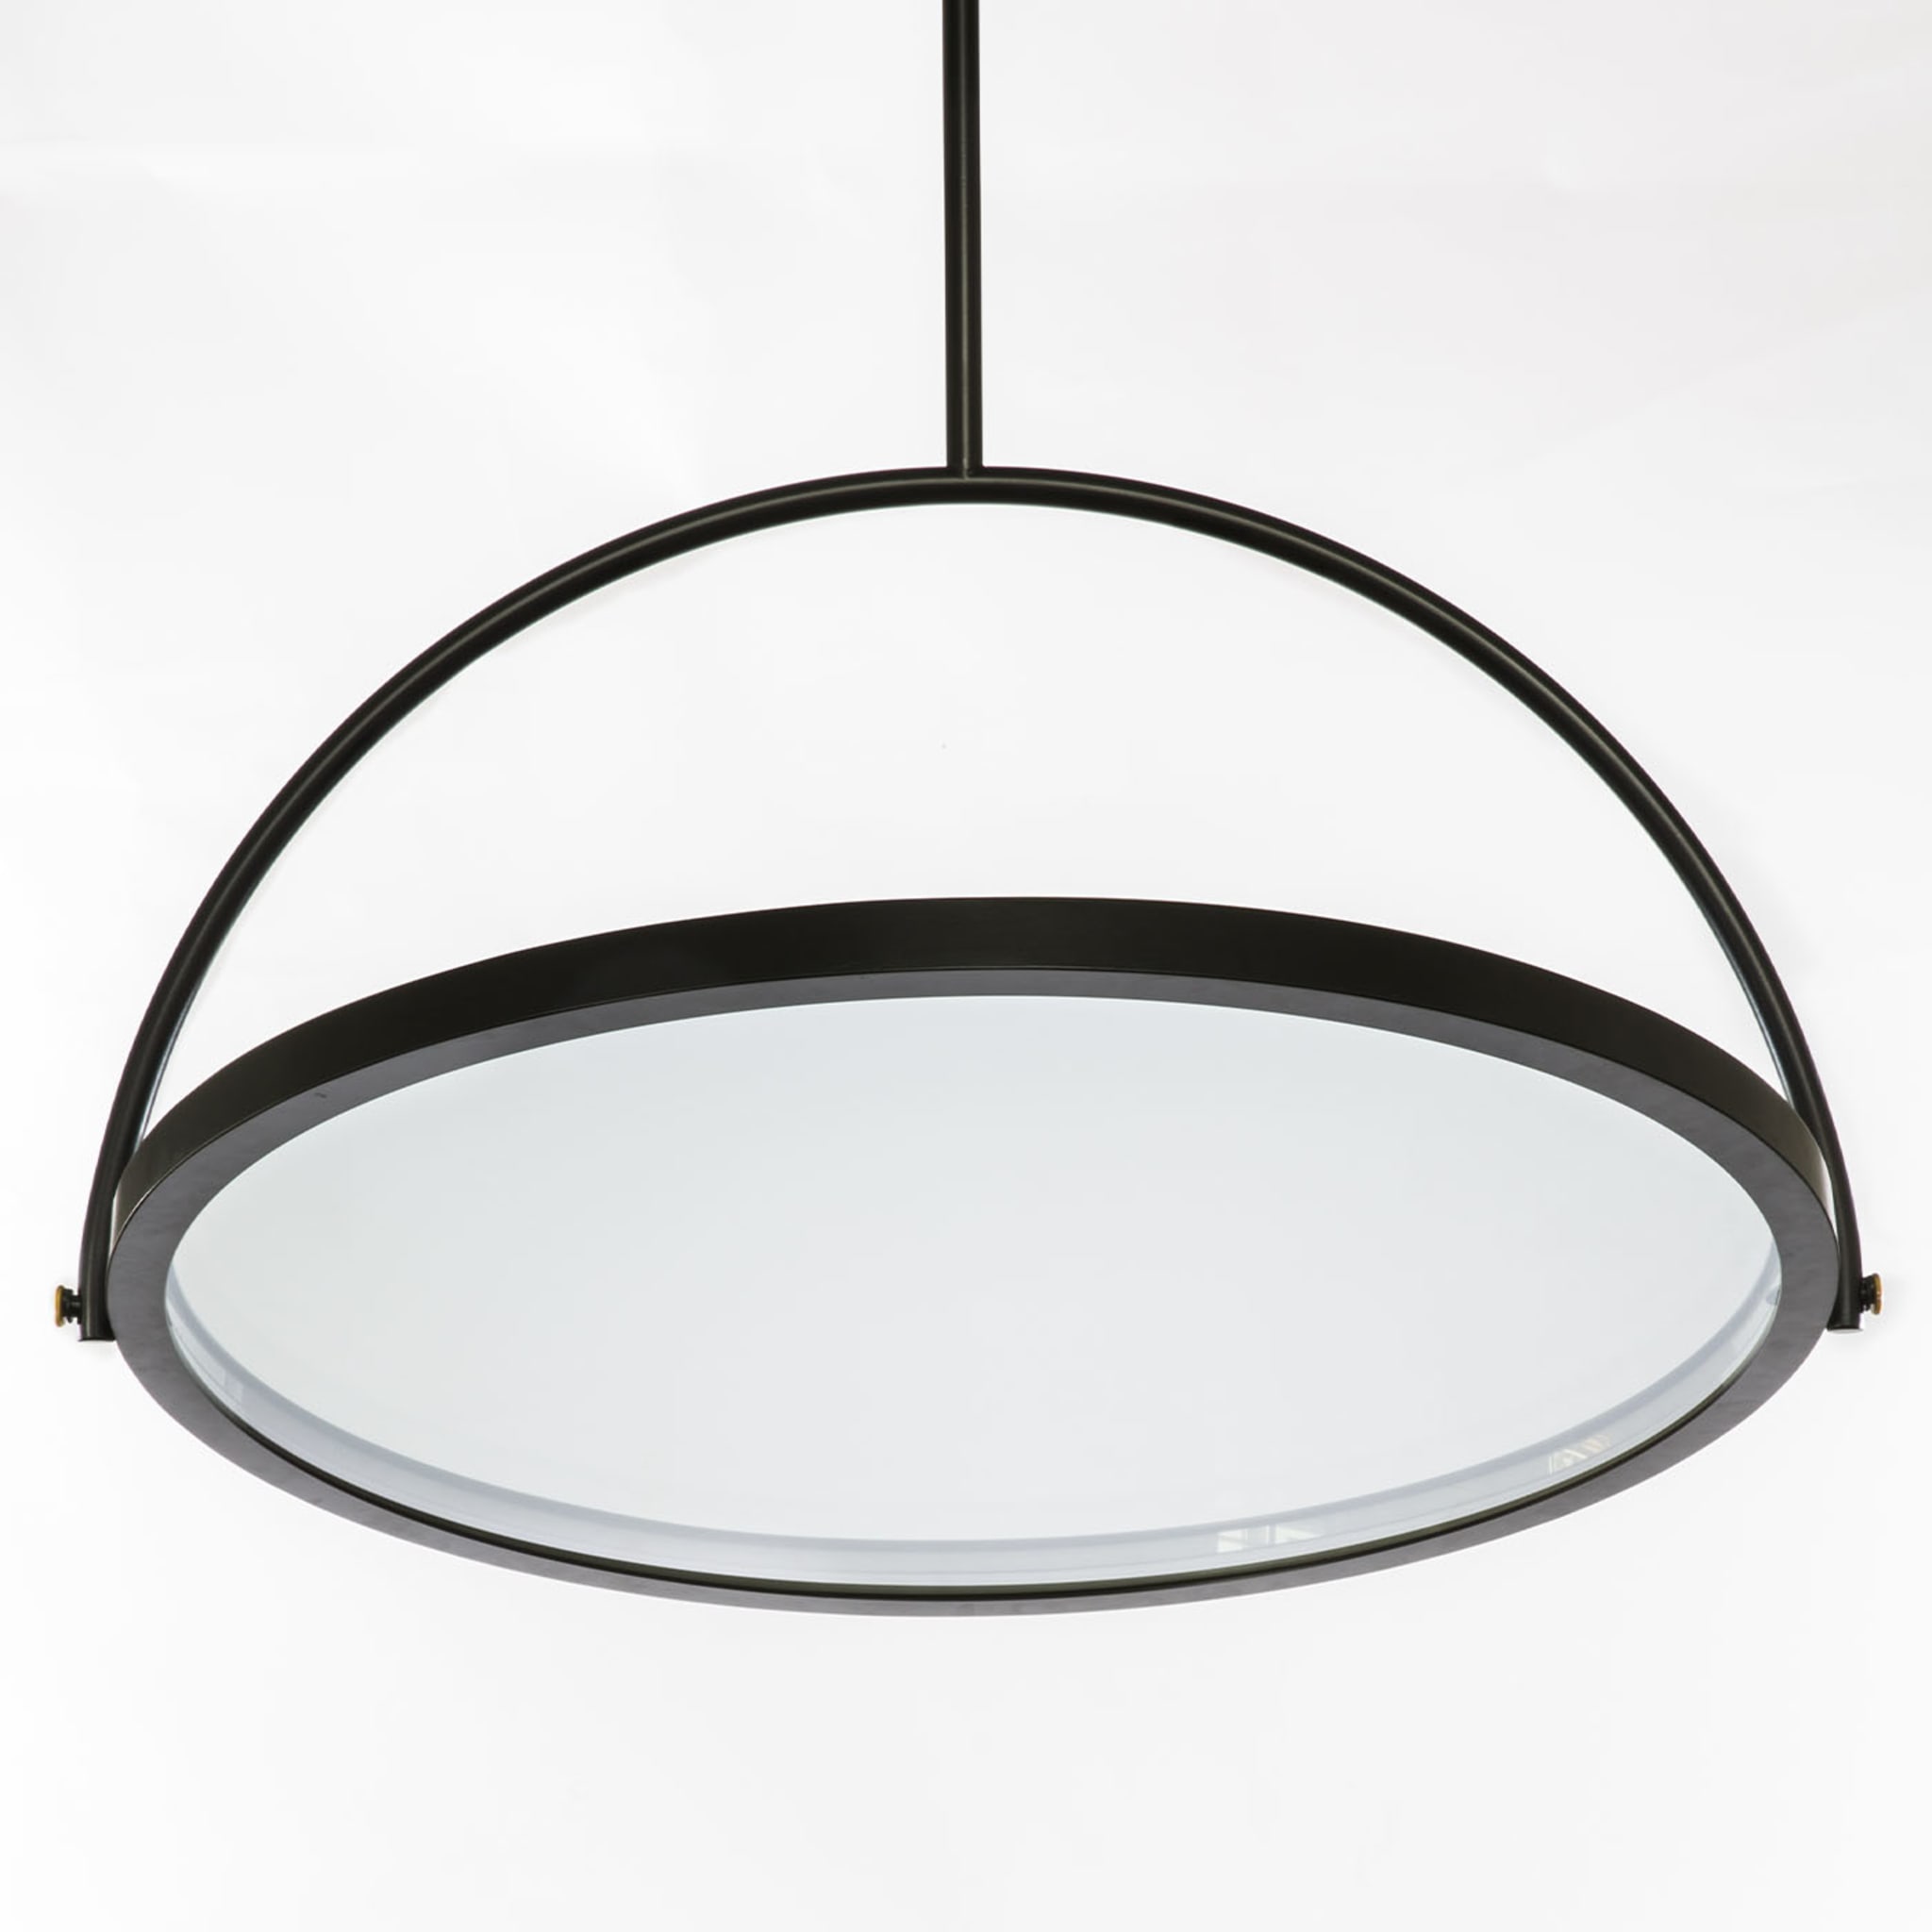 Oblio-Spiegellampe von Gio Tirotto  - Alternative Ansicht 2